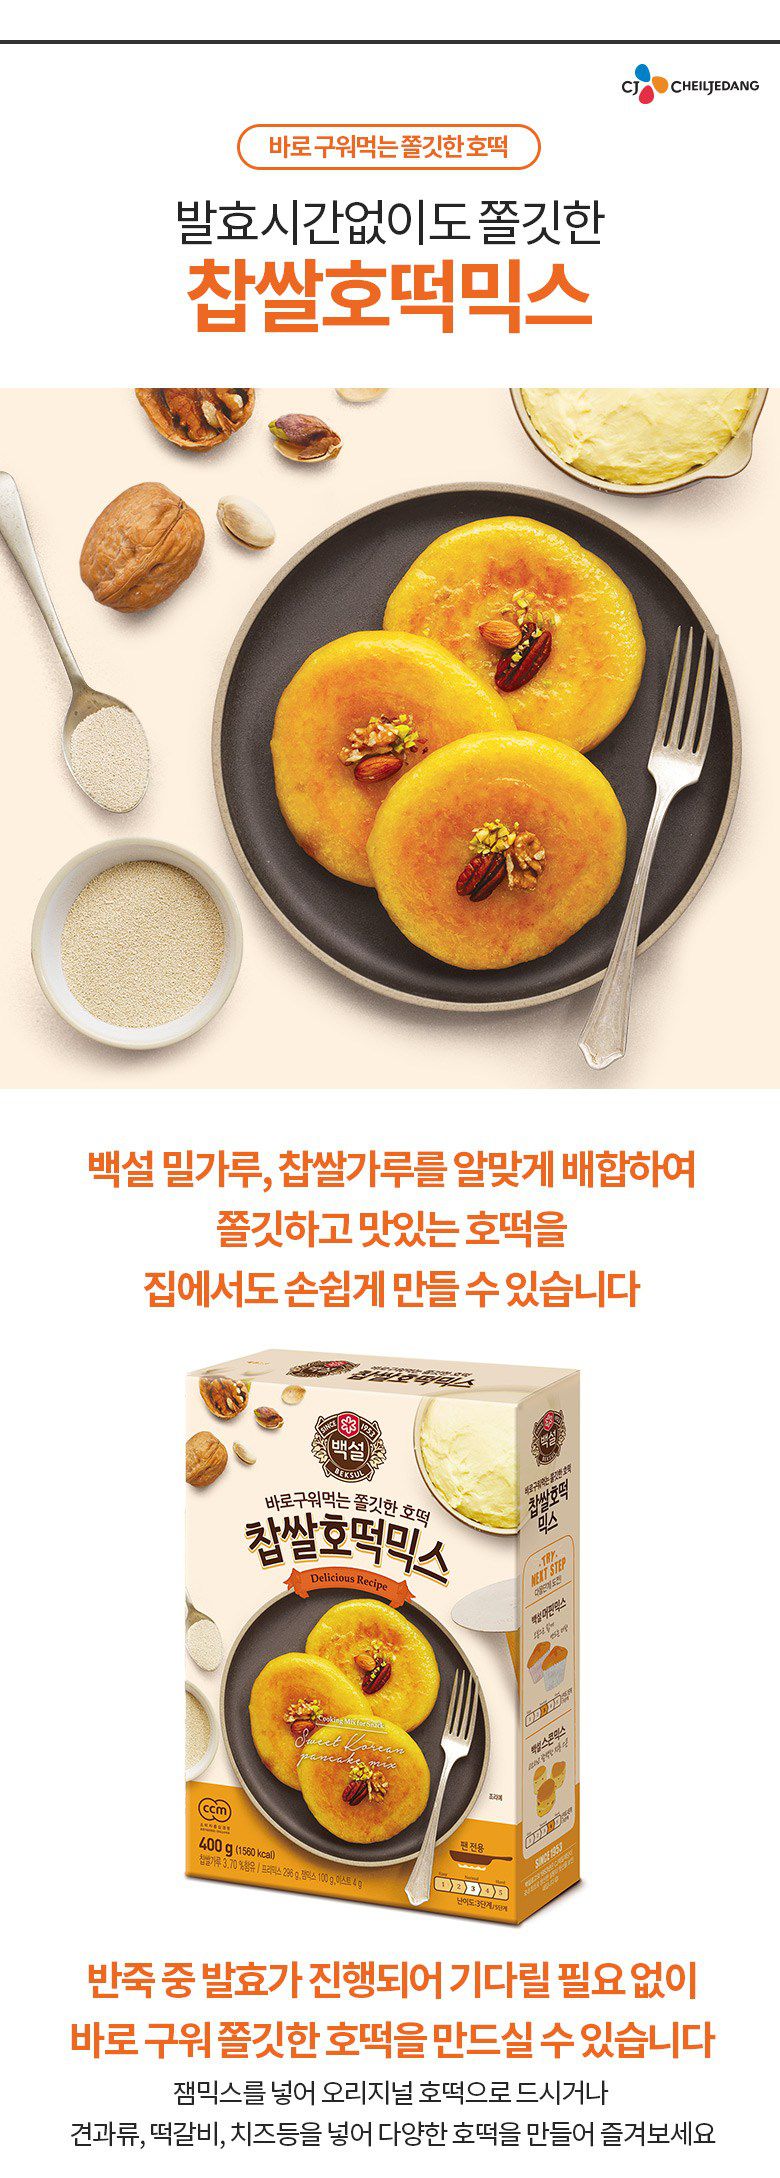 韓國食品-[CJ] 白雪 糯米煎餅粉 400g